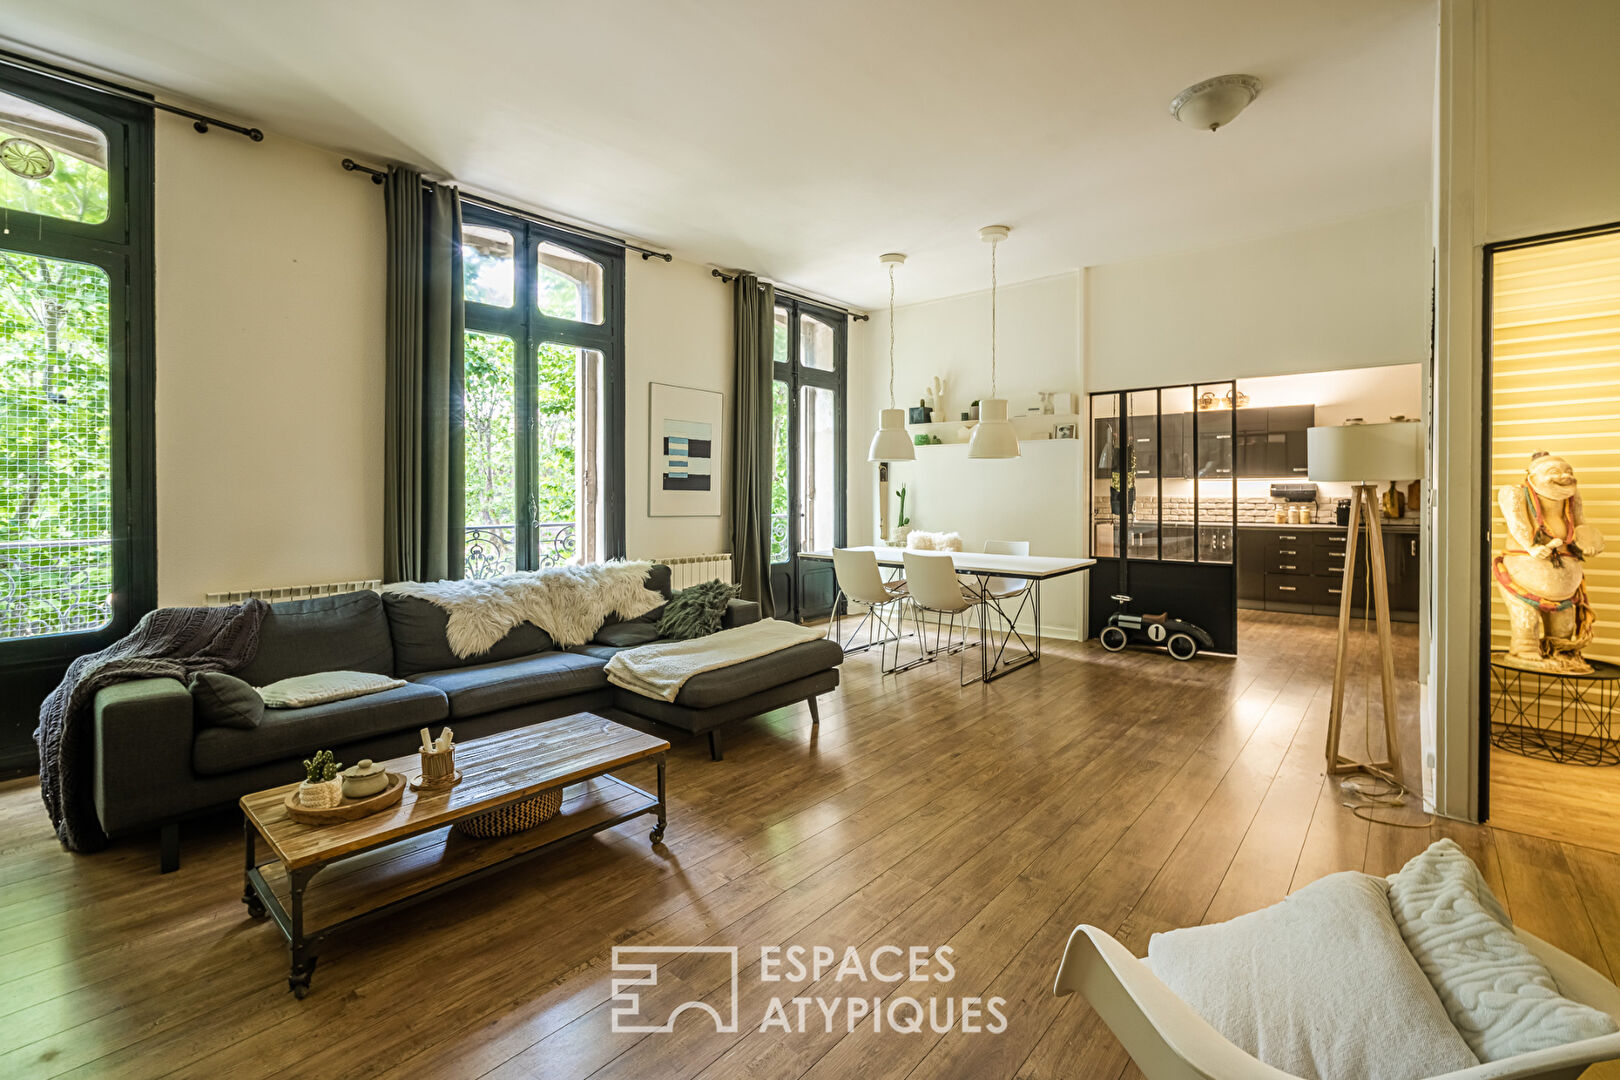 Narbonne city center apartment – Espaces Atypiques